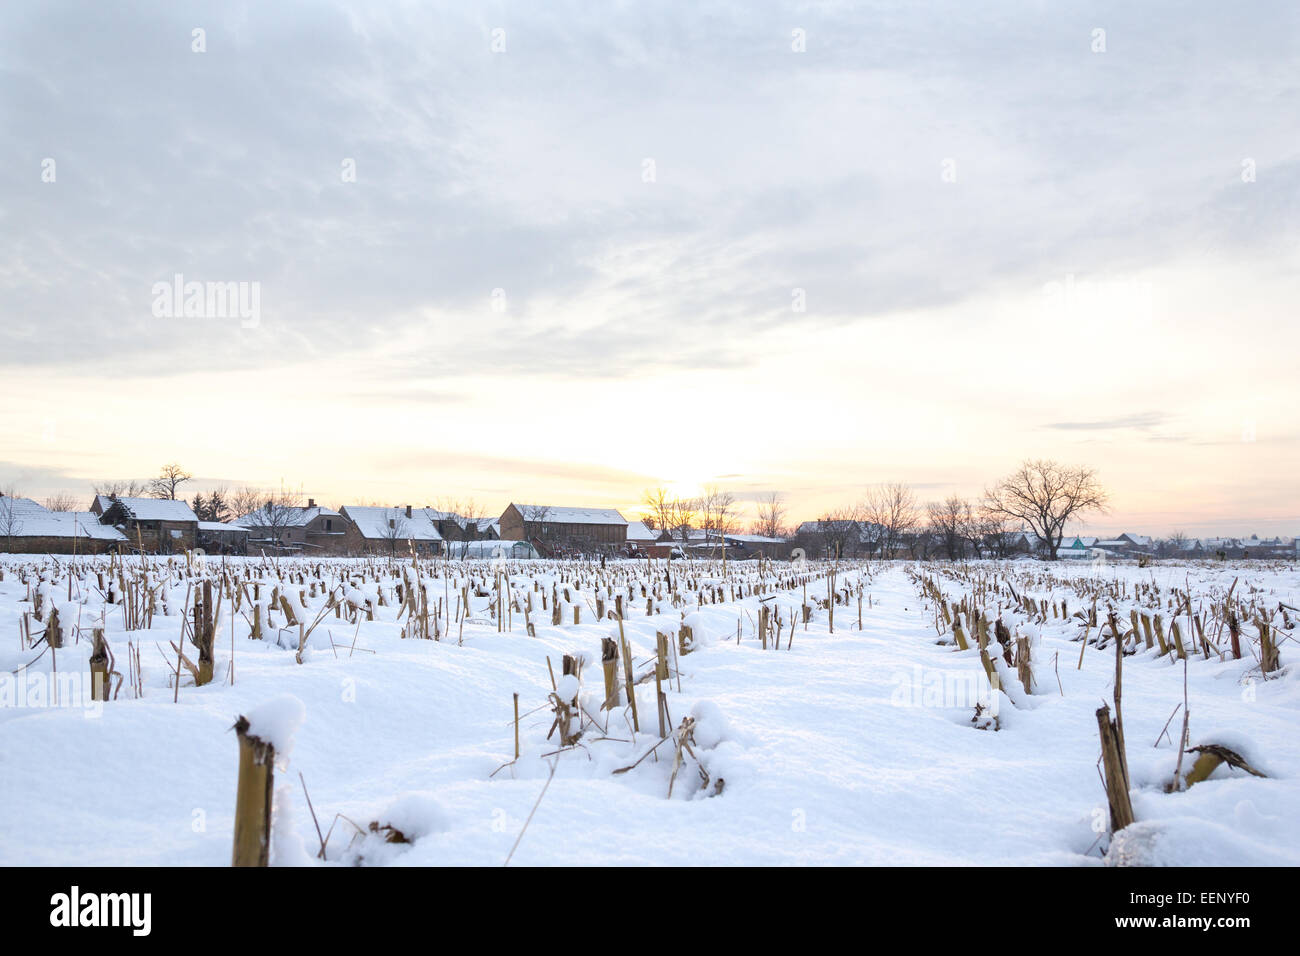 Inverno del racconto. Paesaggio invernale innevato con il villaggio di campagna accanto a cornfield coperto di neve bianca coprire al tramonto o sunris Foto Stock